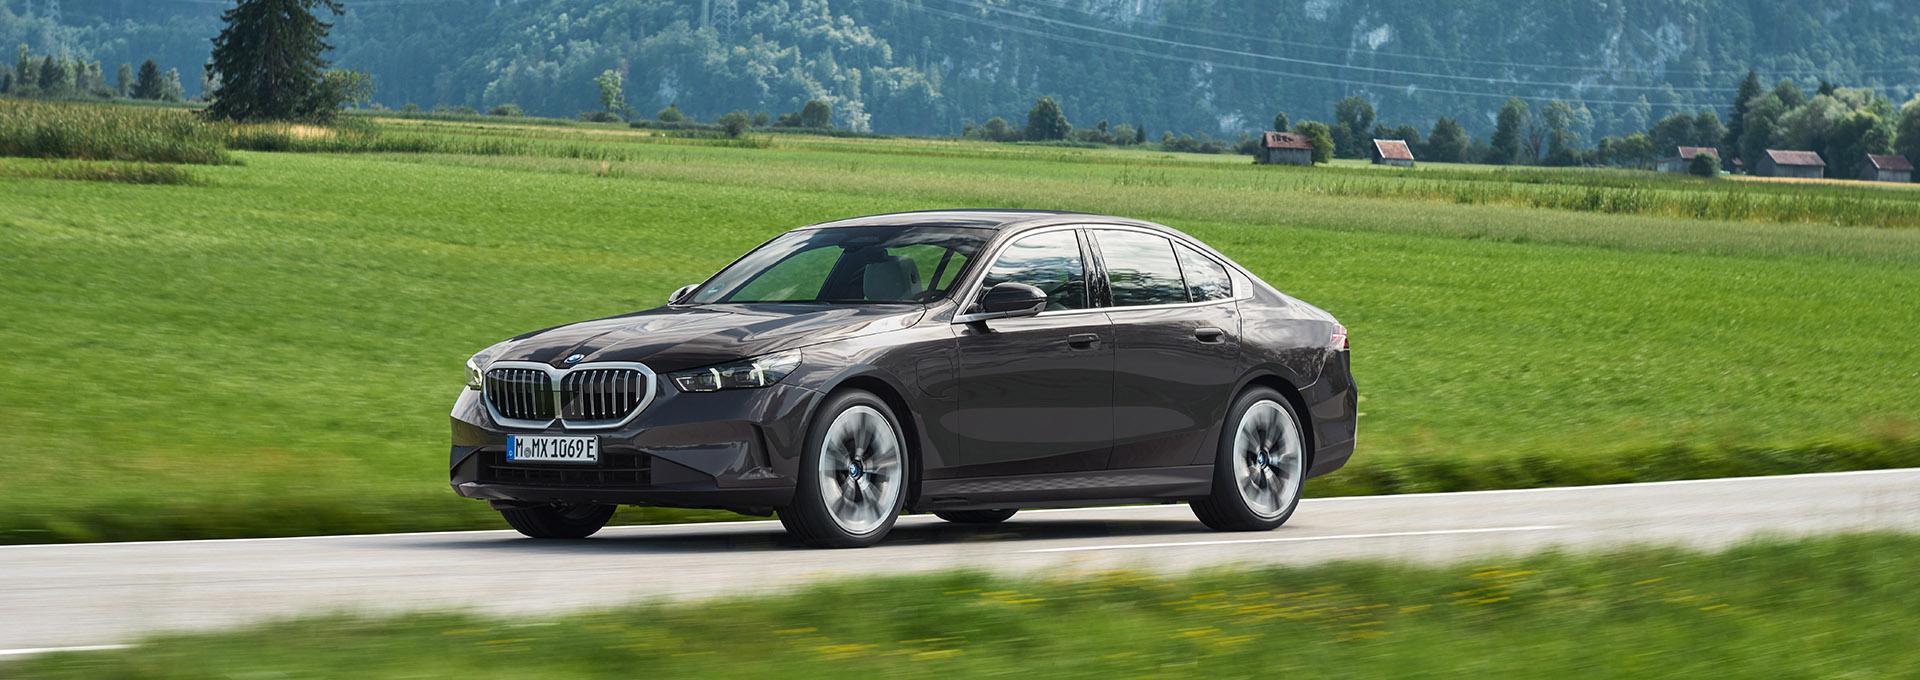 Η BMW Σειρά 5 Sedan: Τώρα και σε έκδοση plug-in hybrid